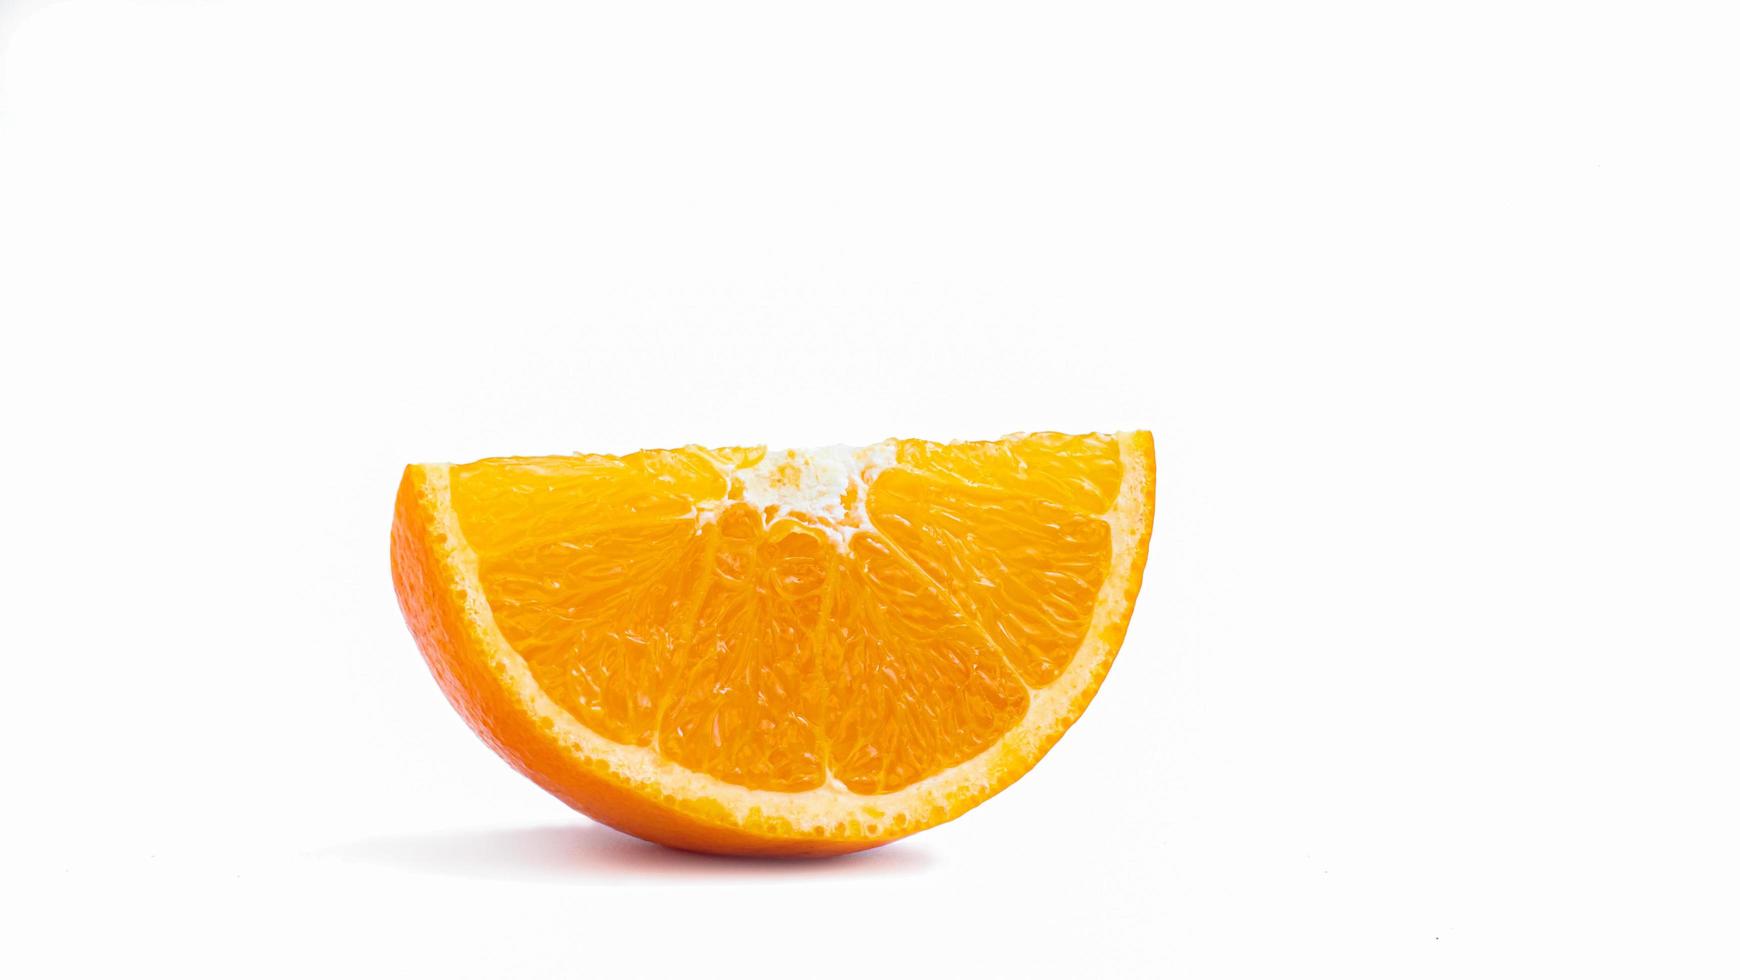 tagliate a metà e affettate un frutto arancione maturo con buccia giallo dorato. isolato su sfondo bianco con ombra. foto